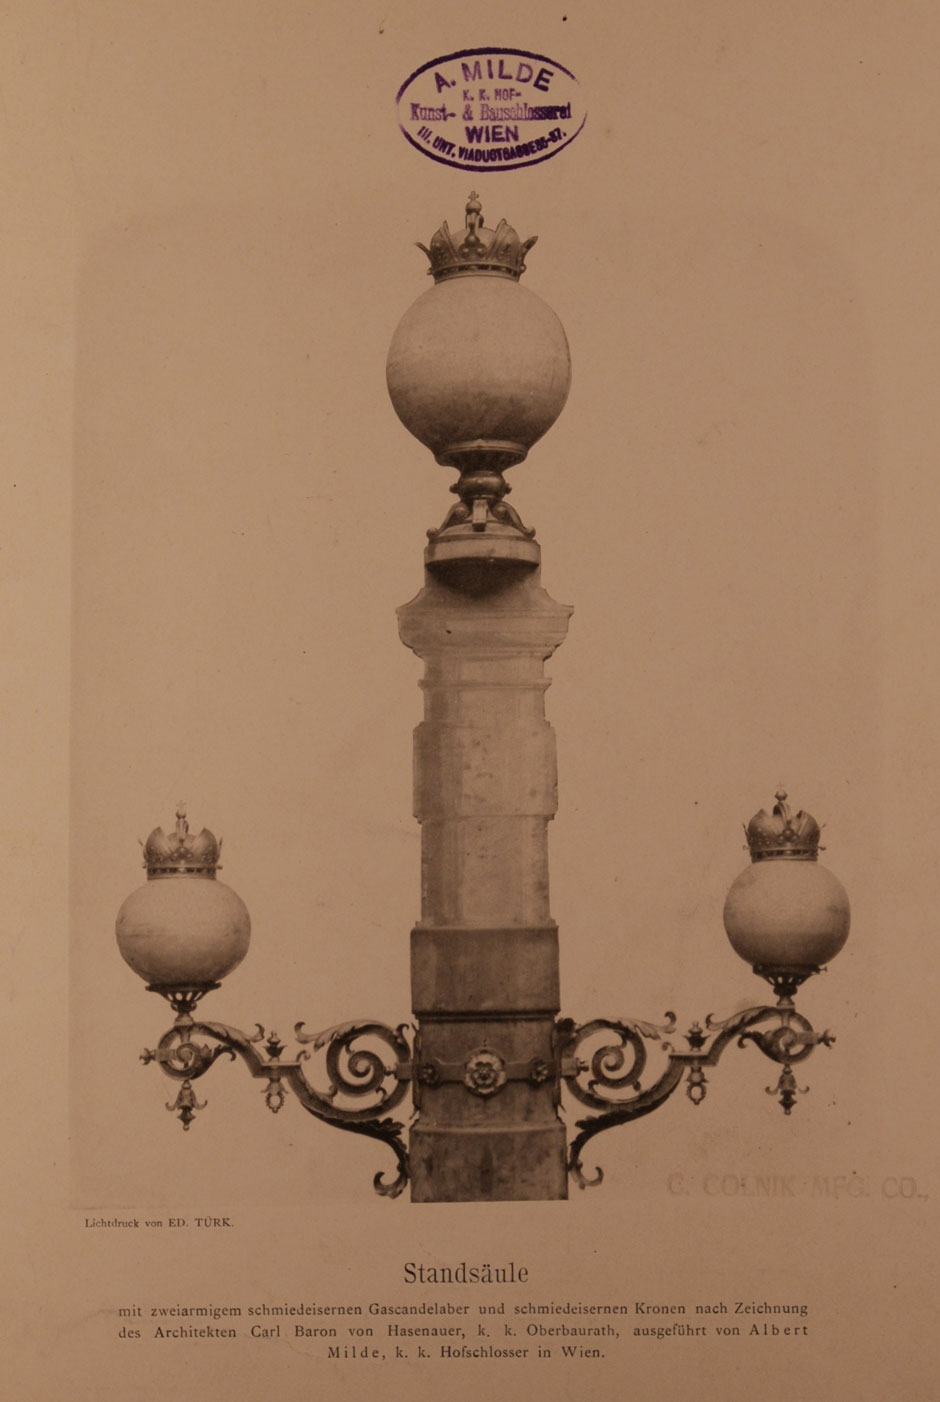 Archivbild: Maria-Theresien-Platz, schmiedeeiserner Steinkandelaber mit zweiarmigen schmiedeeisernen Gaskandelaber und schmiedeeisernen Kronen